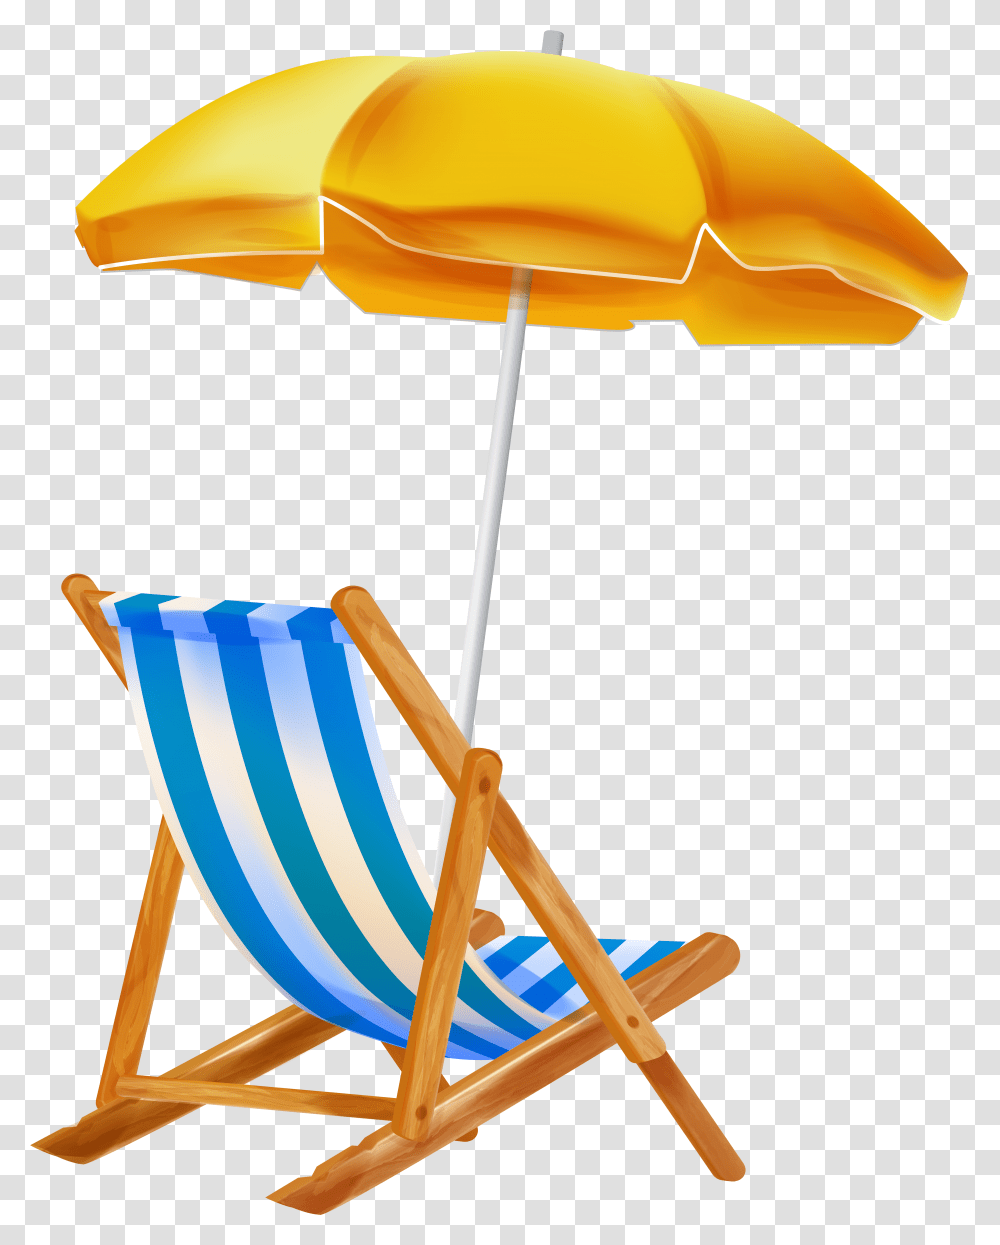 Beach Umbrella With Chair Clipar Gallery Beach Beach Umbrella And Chair Transparent Png